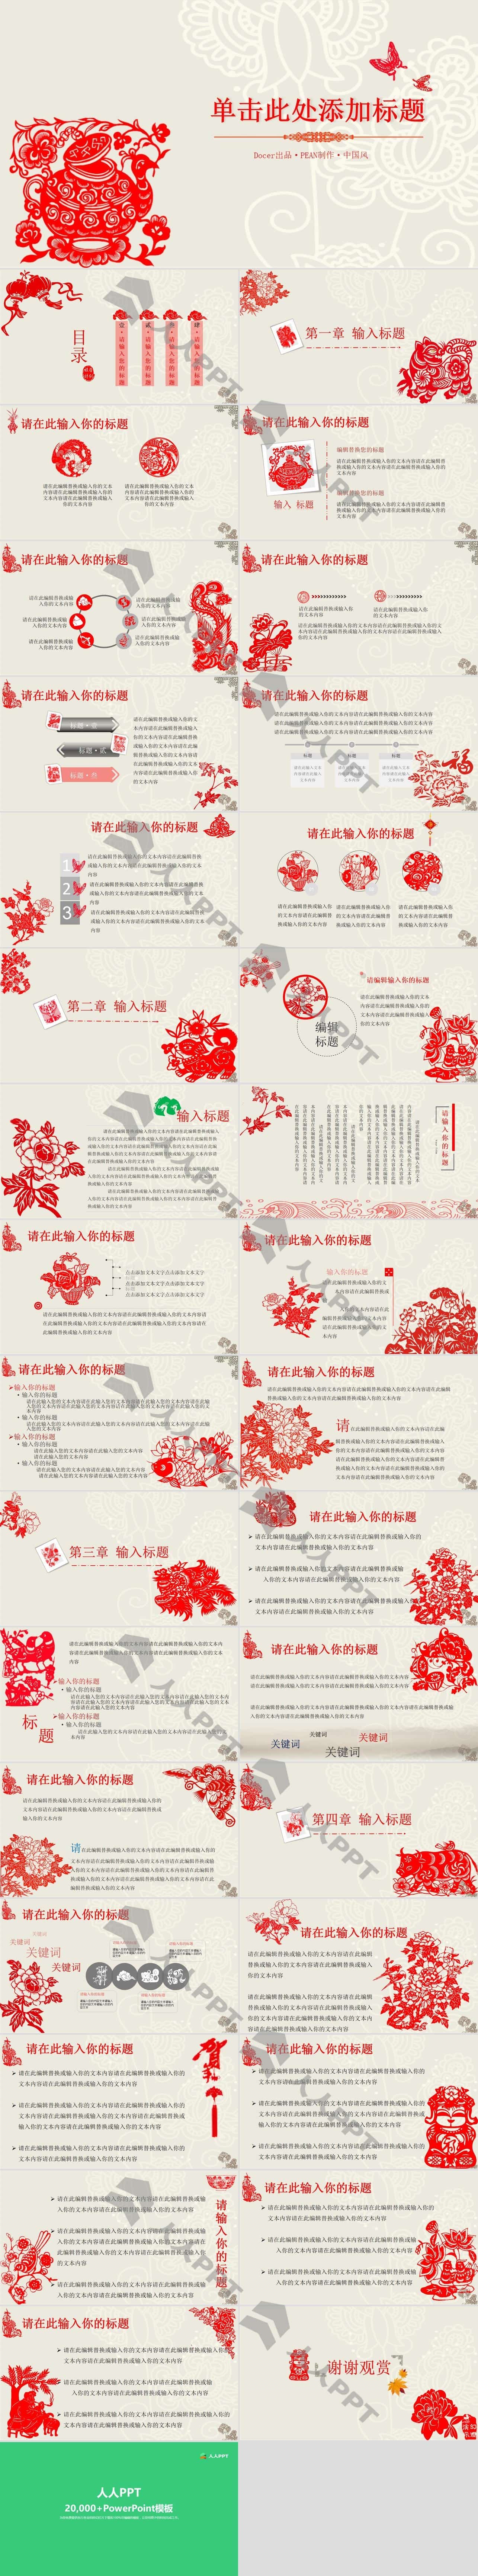 创意文化剪纸中国风PPT模板长图